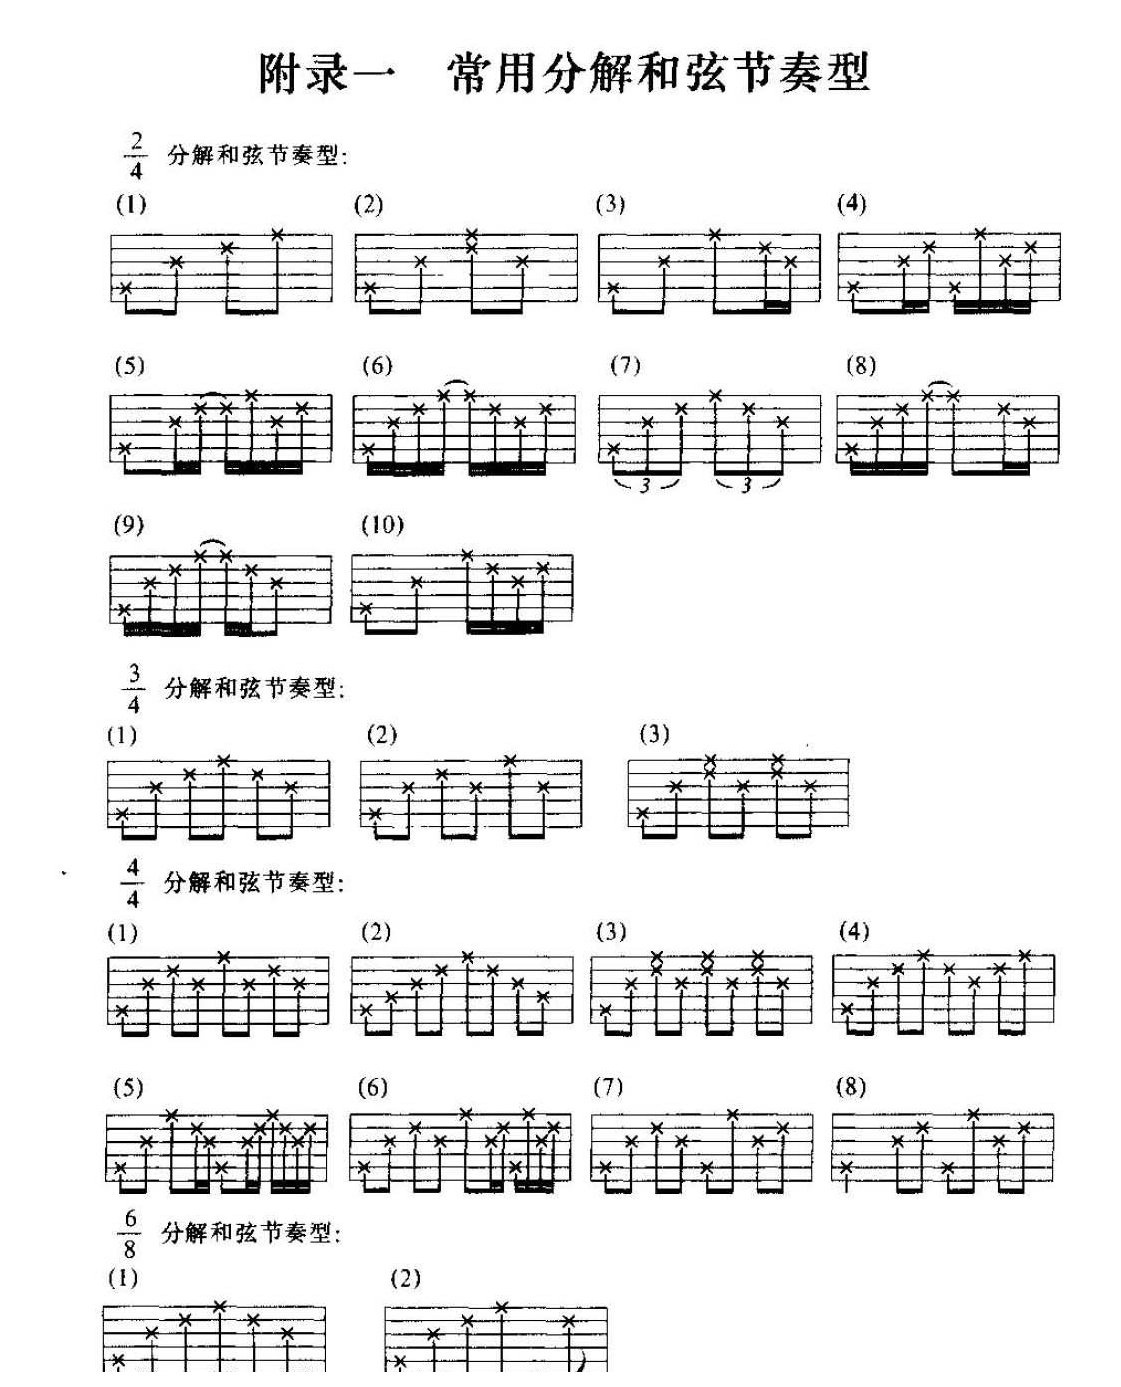 吉他常用分解和弦节奏型